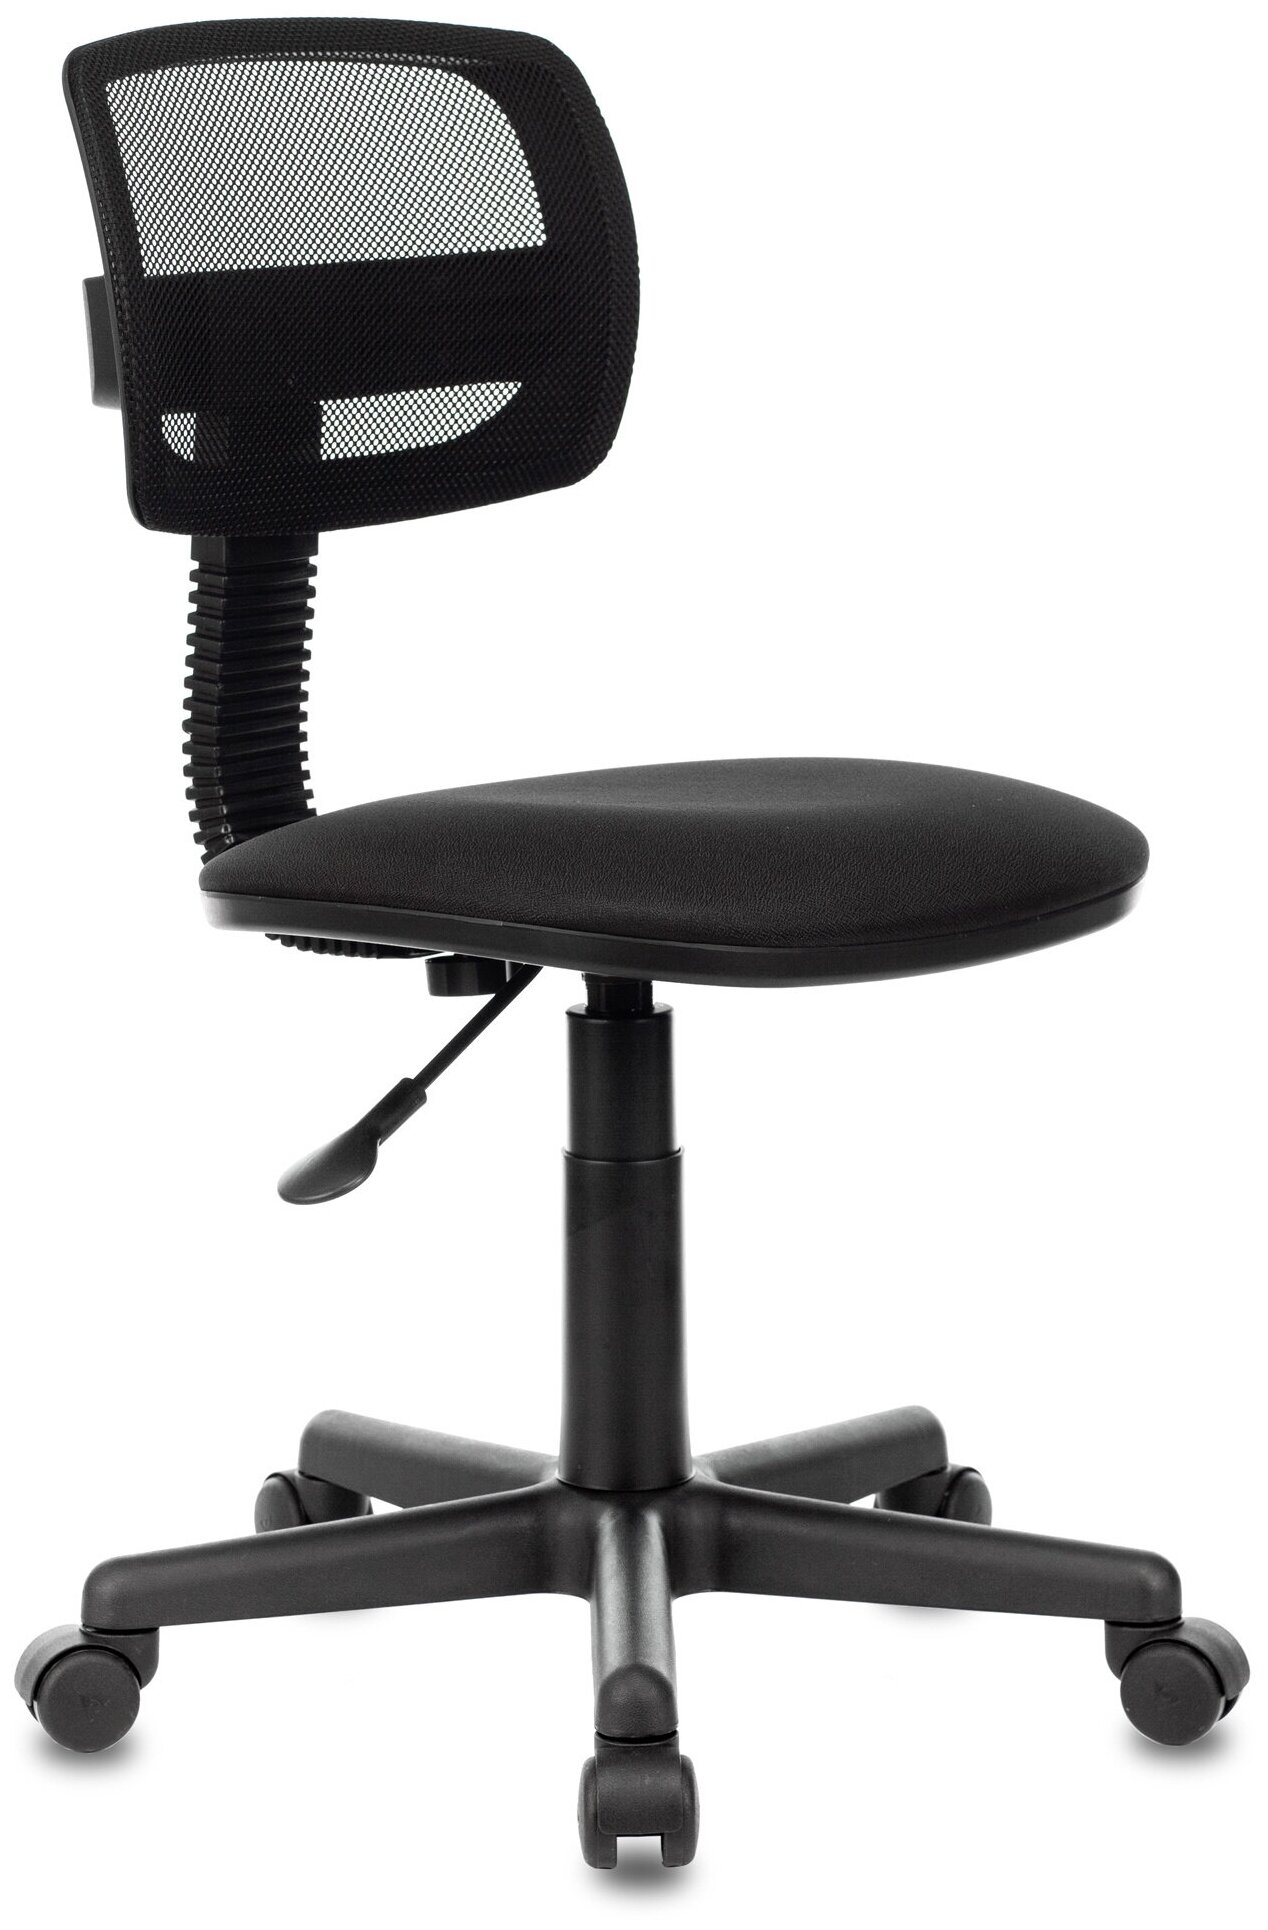 Кресло CH-299NX черный сиденье черный 15-21 сетка/ткань крестовина пластик / Компьютерное кресло для ребенка, школьника, подростка